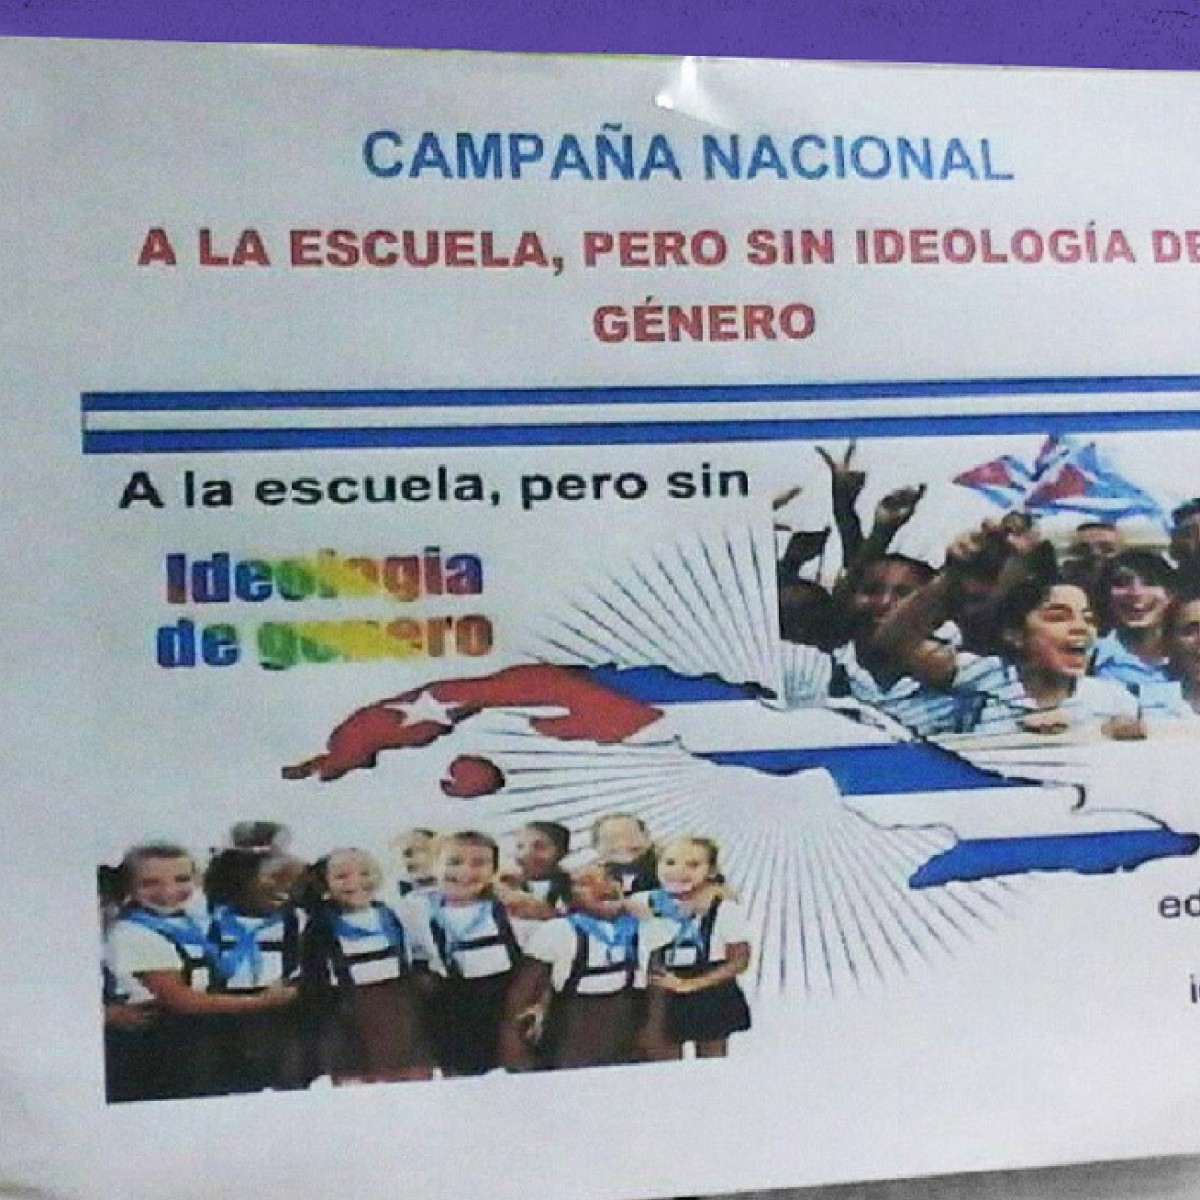 «A la escuela, pero sin ideología de género», una campaña de las iglesias antiderechos por la ignorancia y la discriminación